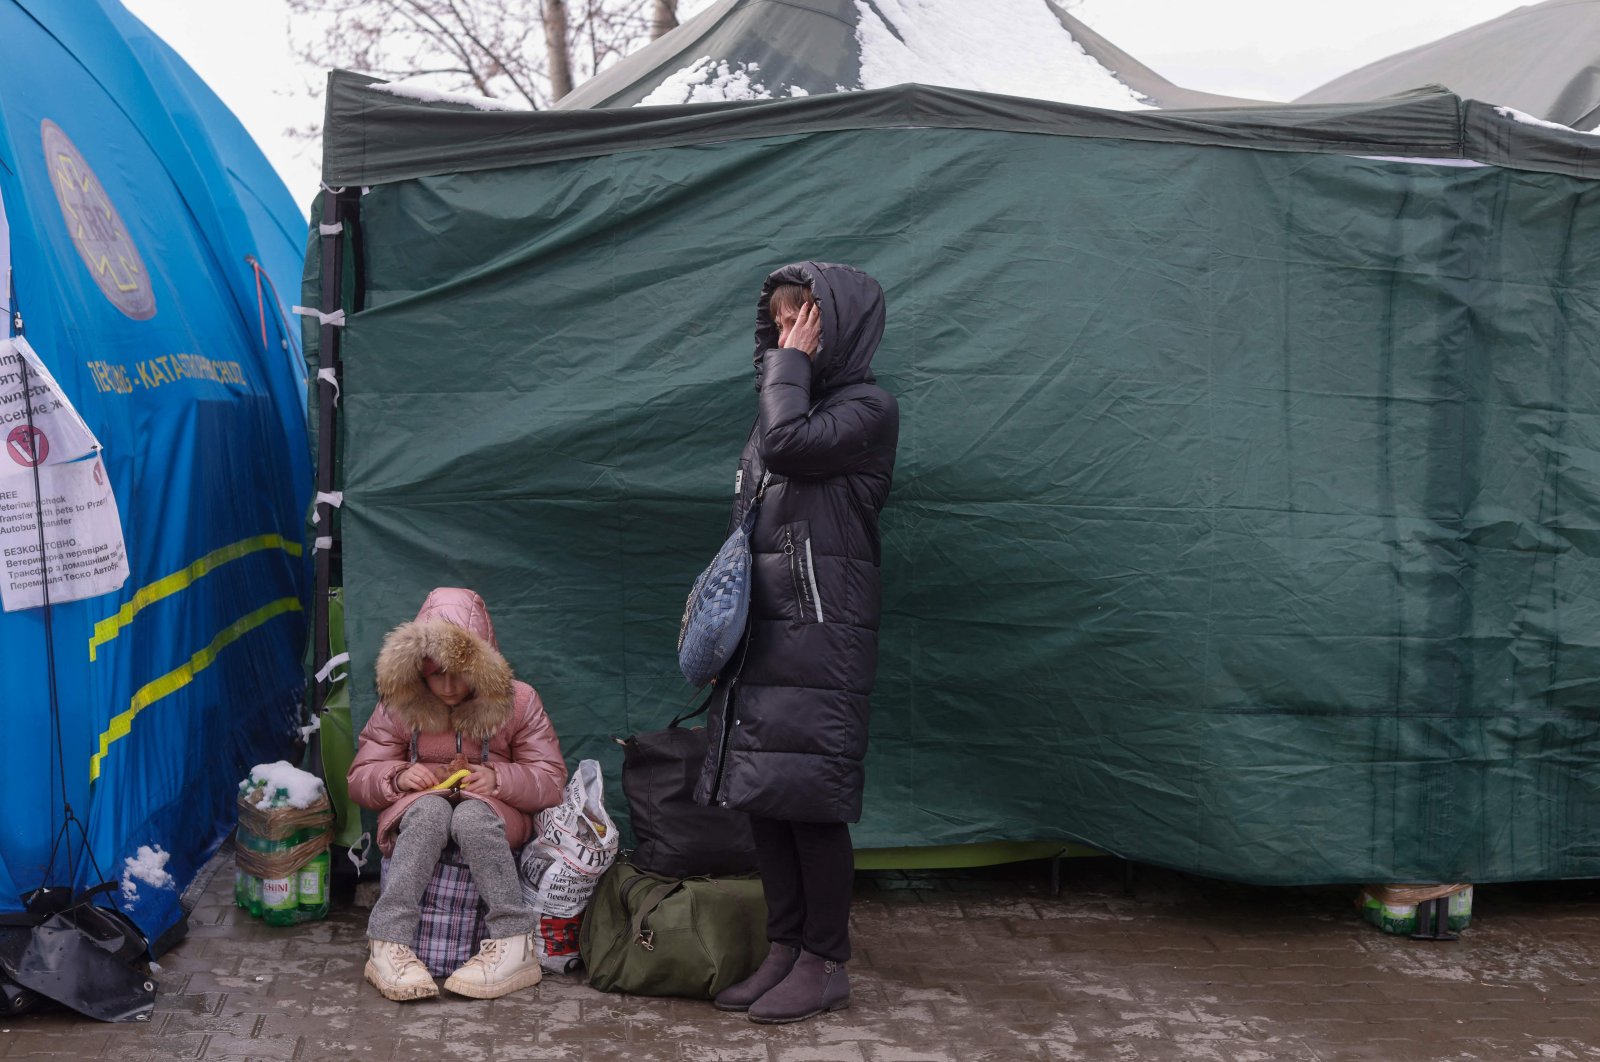 Lebih banyak evakuasi diperlukan dari Luhansk karena penembakan meningkat: Gubernur